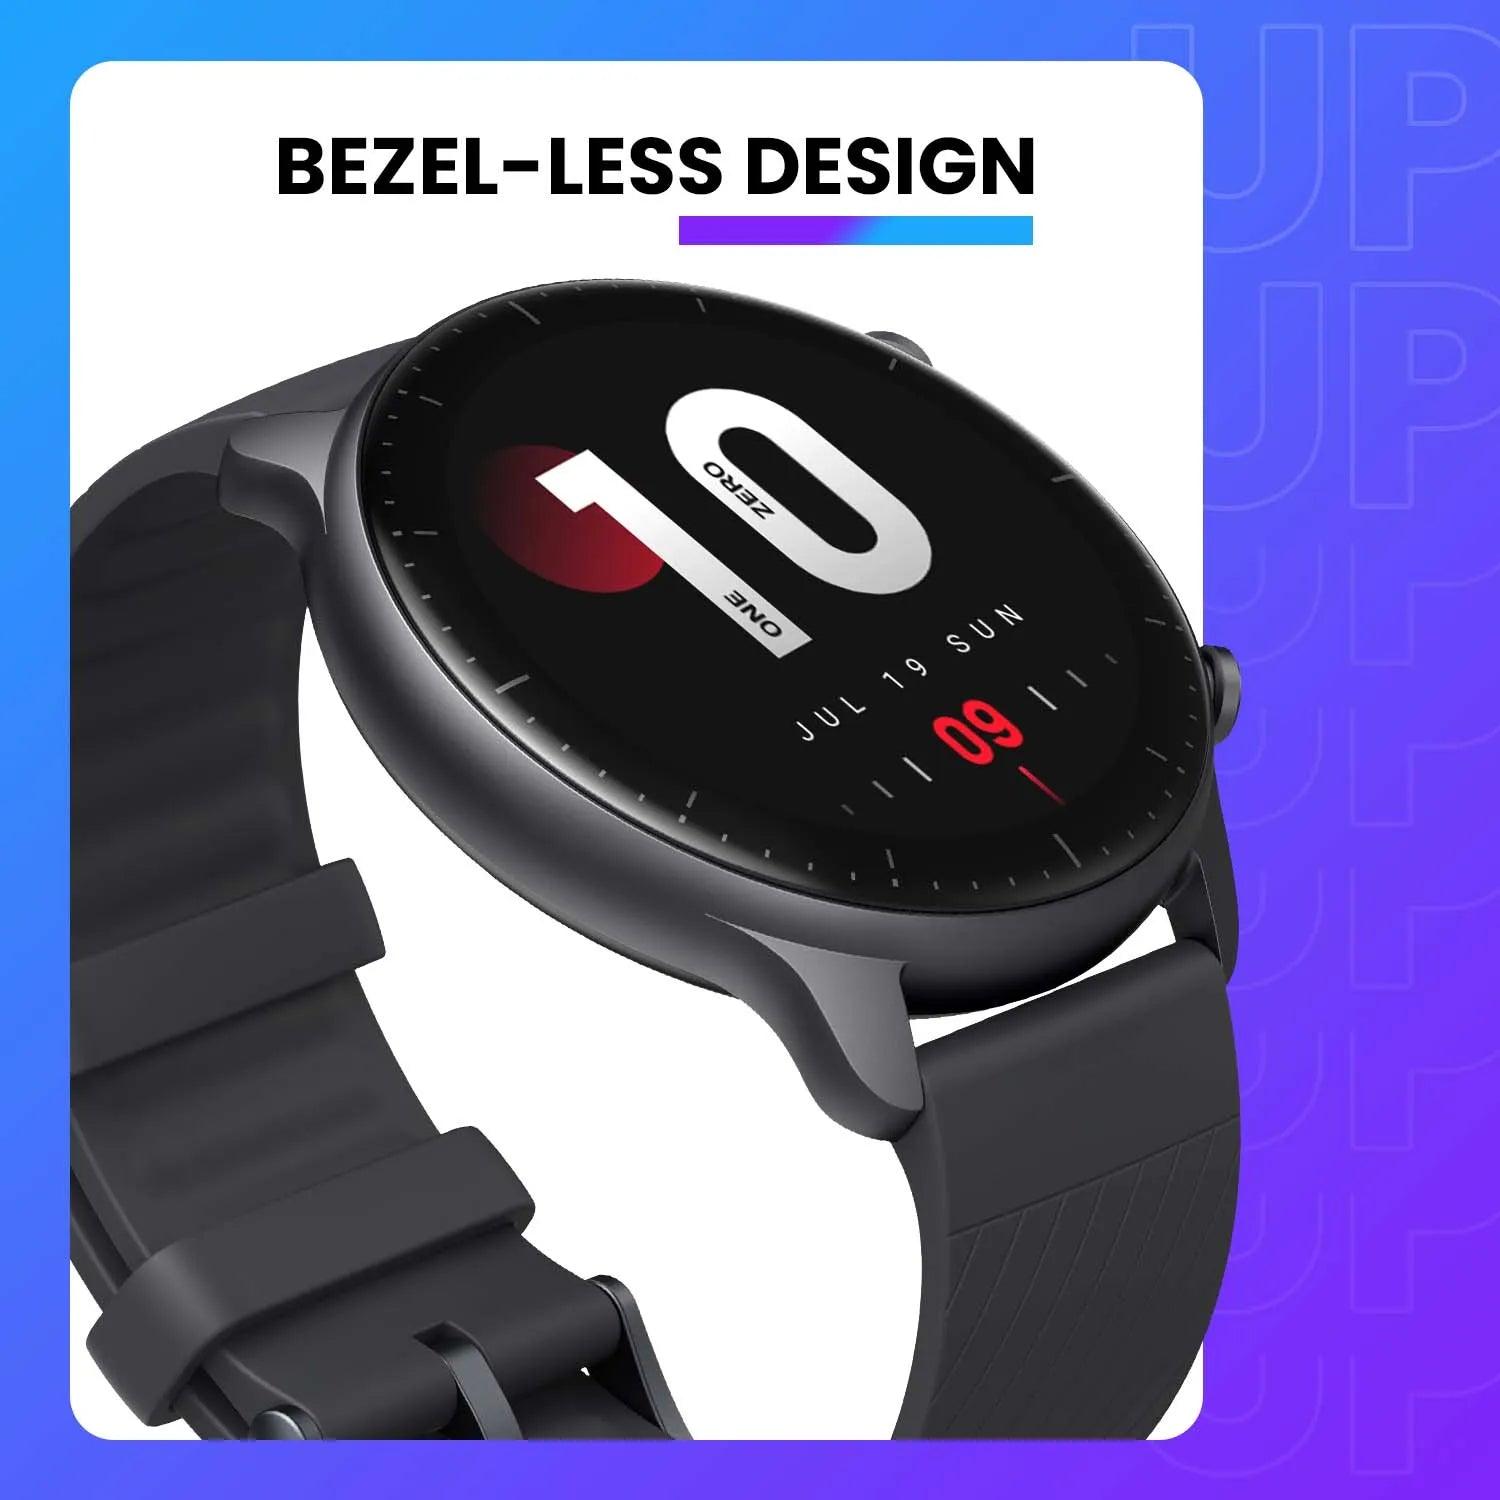 Amazfit GTR 2 Smartwatch - Bezel-less Design, Alexa, Long Battery Life  ourlum.com   